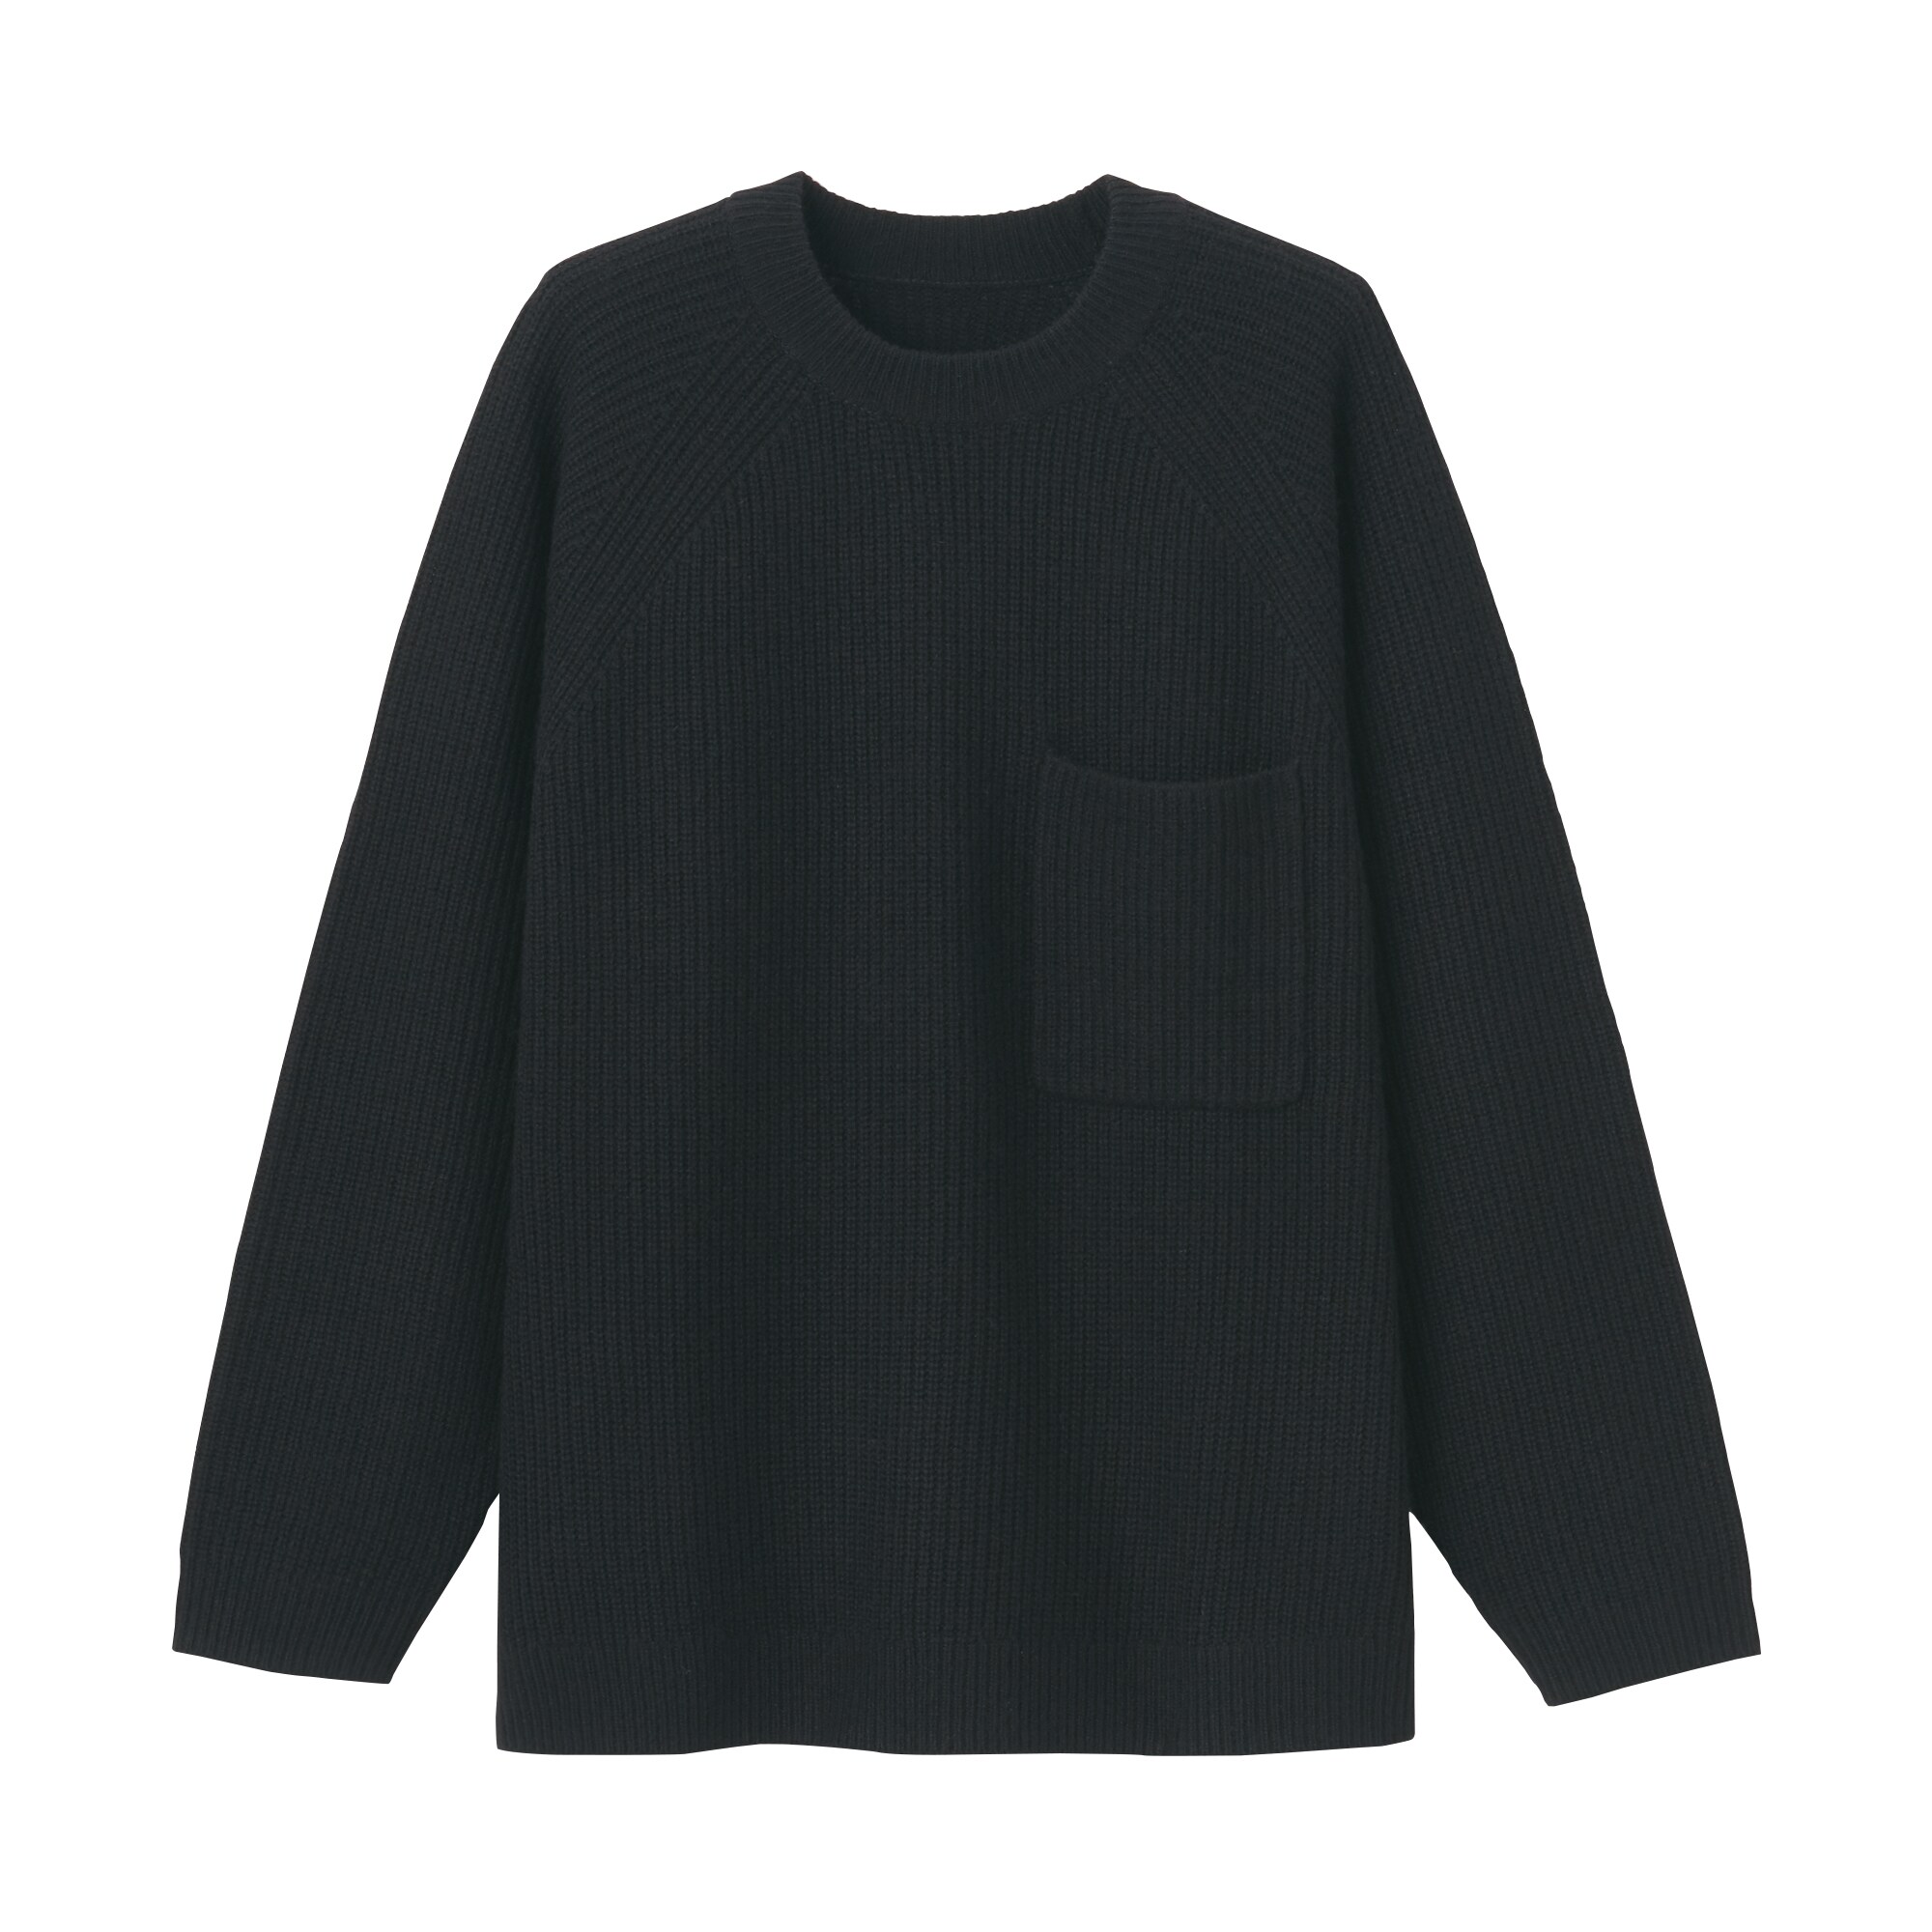 무인양품 일본 남성 크루넥 야크혼방 울 니트 스웨터 M 블랙